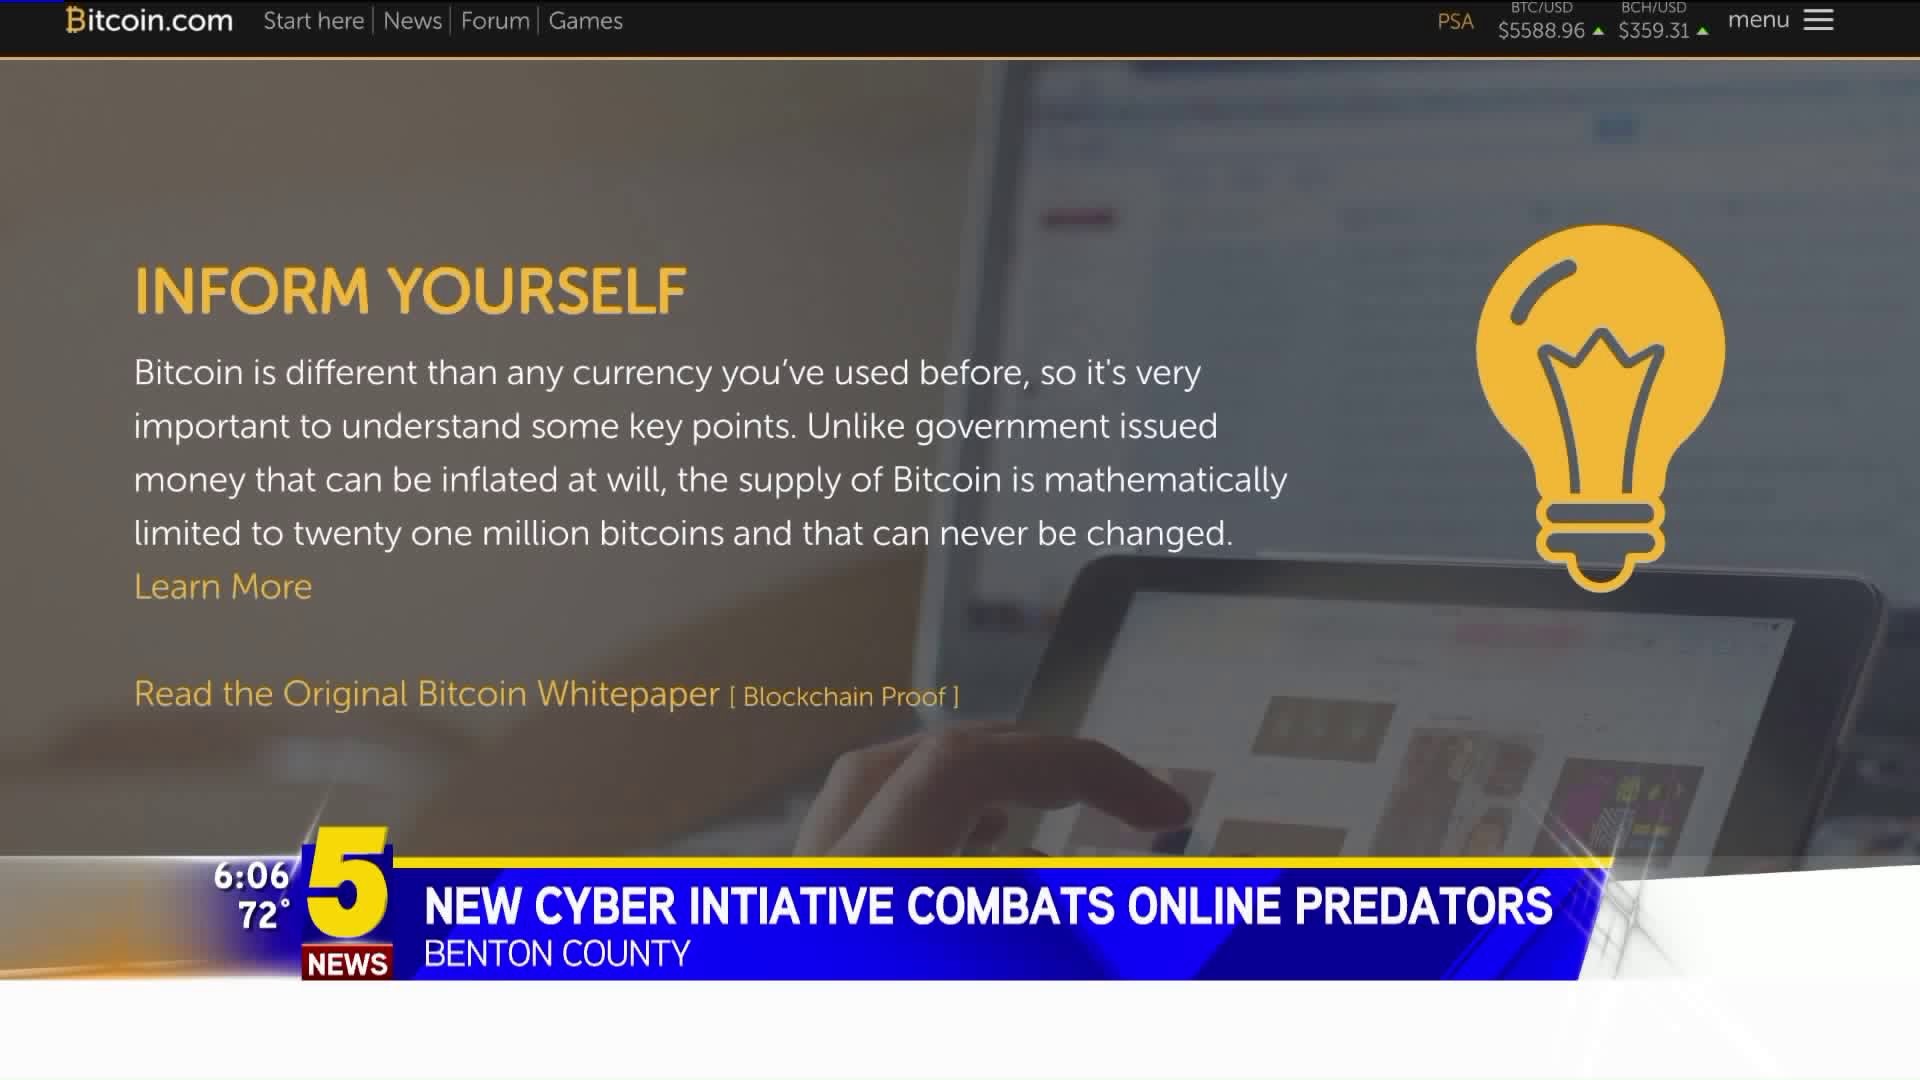 New Cyber Initiative Combats Online Predators